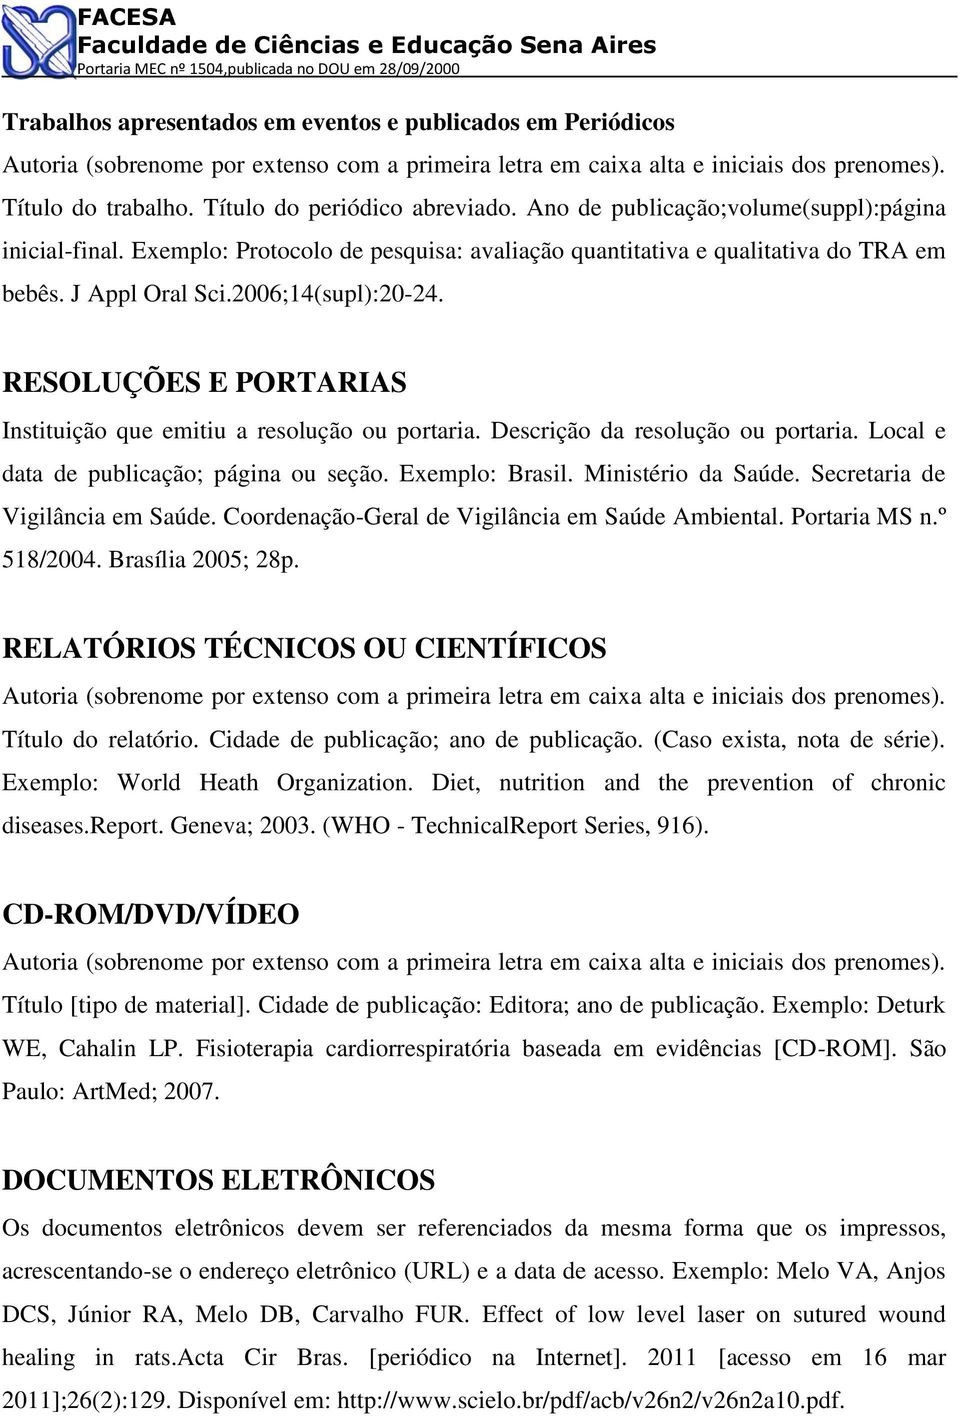 Descrição da resolução ou portaria. Local e data de publicação; página ou seção. Exemplo: Brasil. Ministério da Saúde. Secretaria de Vigilância em Saúde.